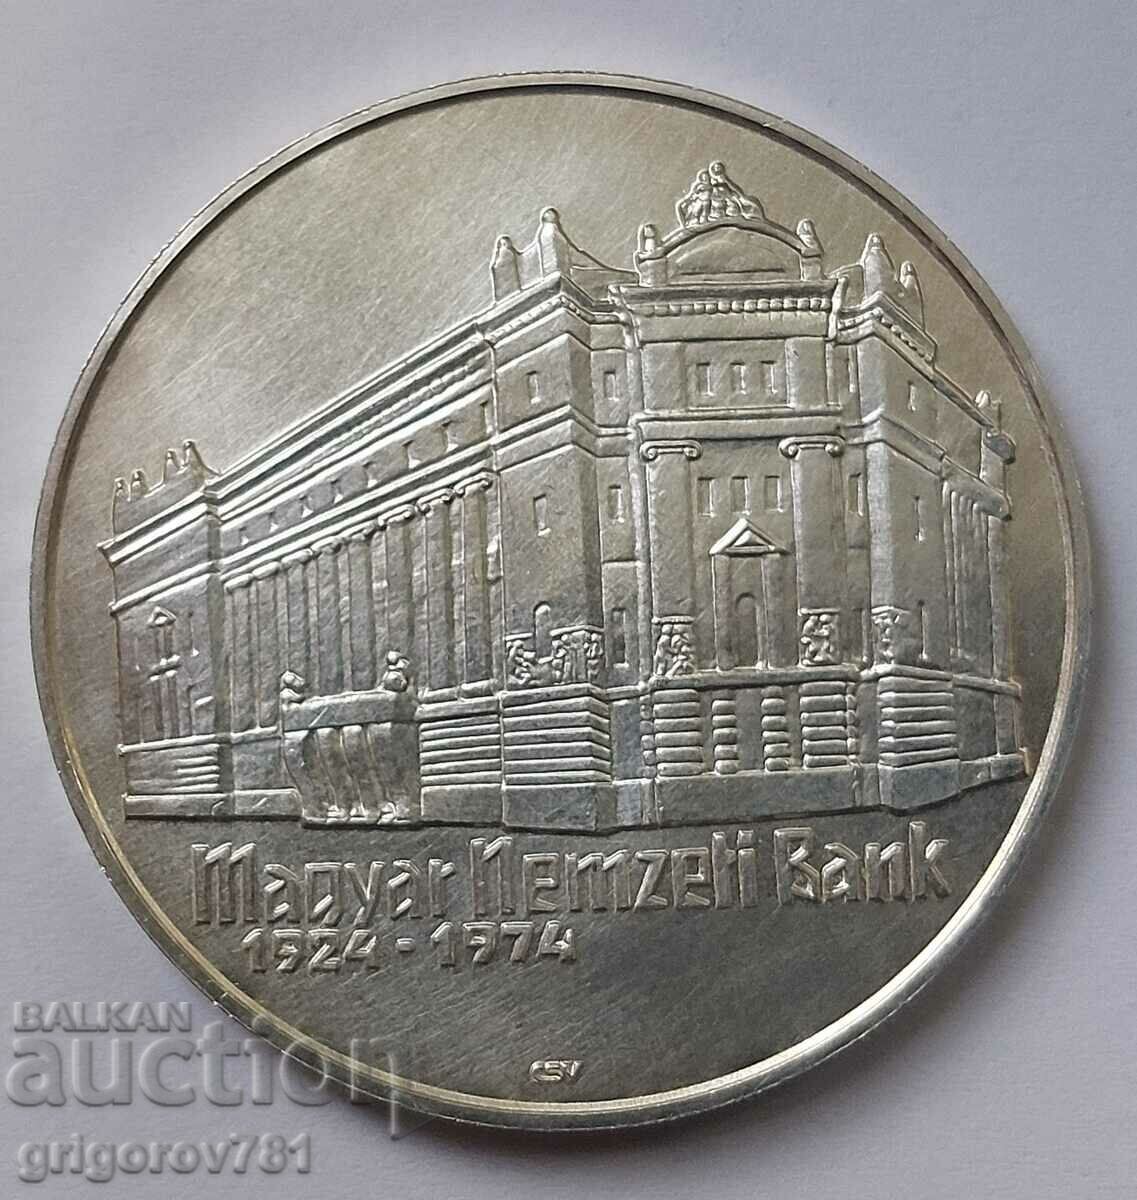 50 forinți argint Ungaria 1974 - monedă de argint